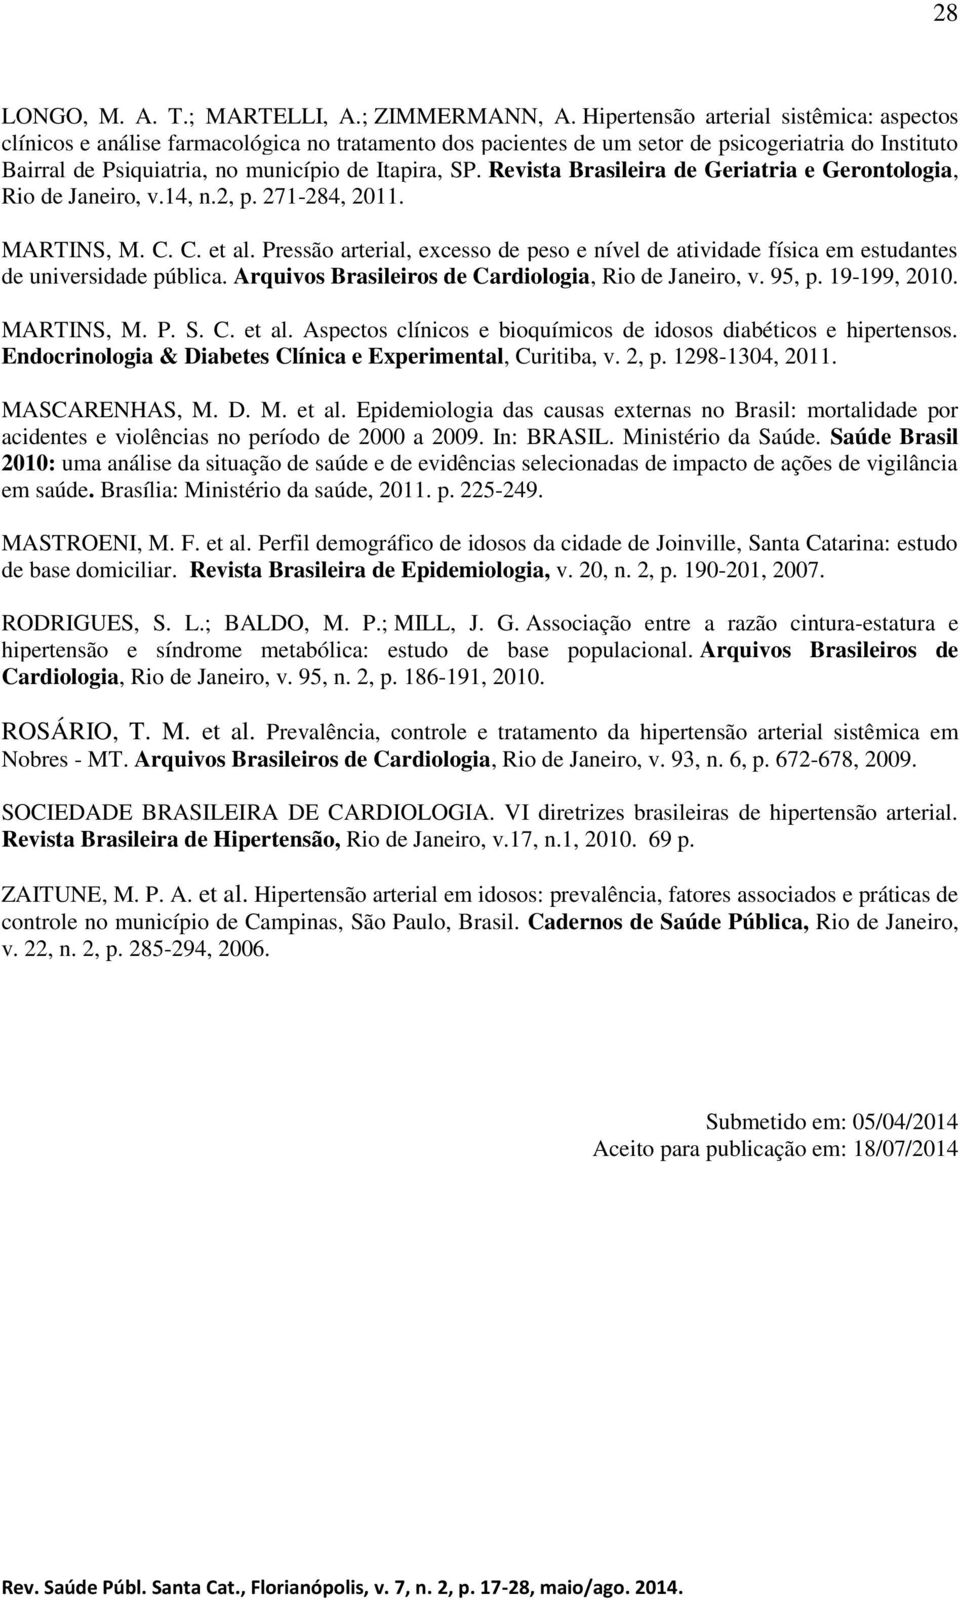 Revista Brasileira de Geriatria e Gerontologia, Rio de Janeiro, v.14, n.2, p. 271-284, 2011. MARTINS, M. C. C. et al.